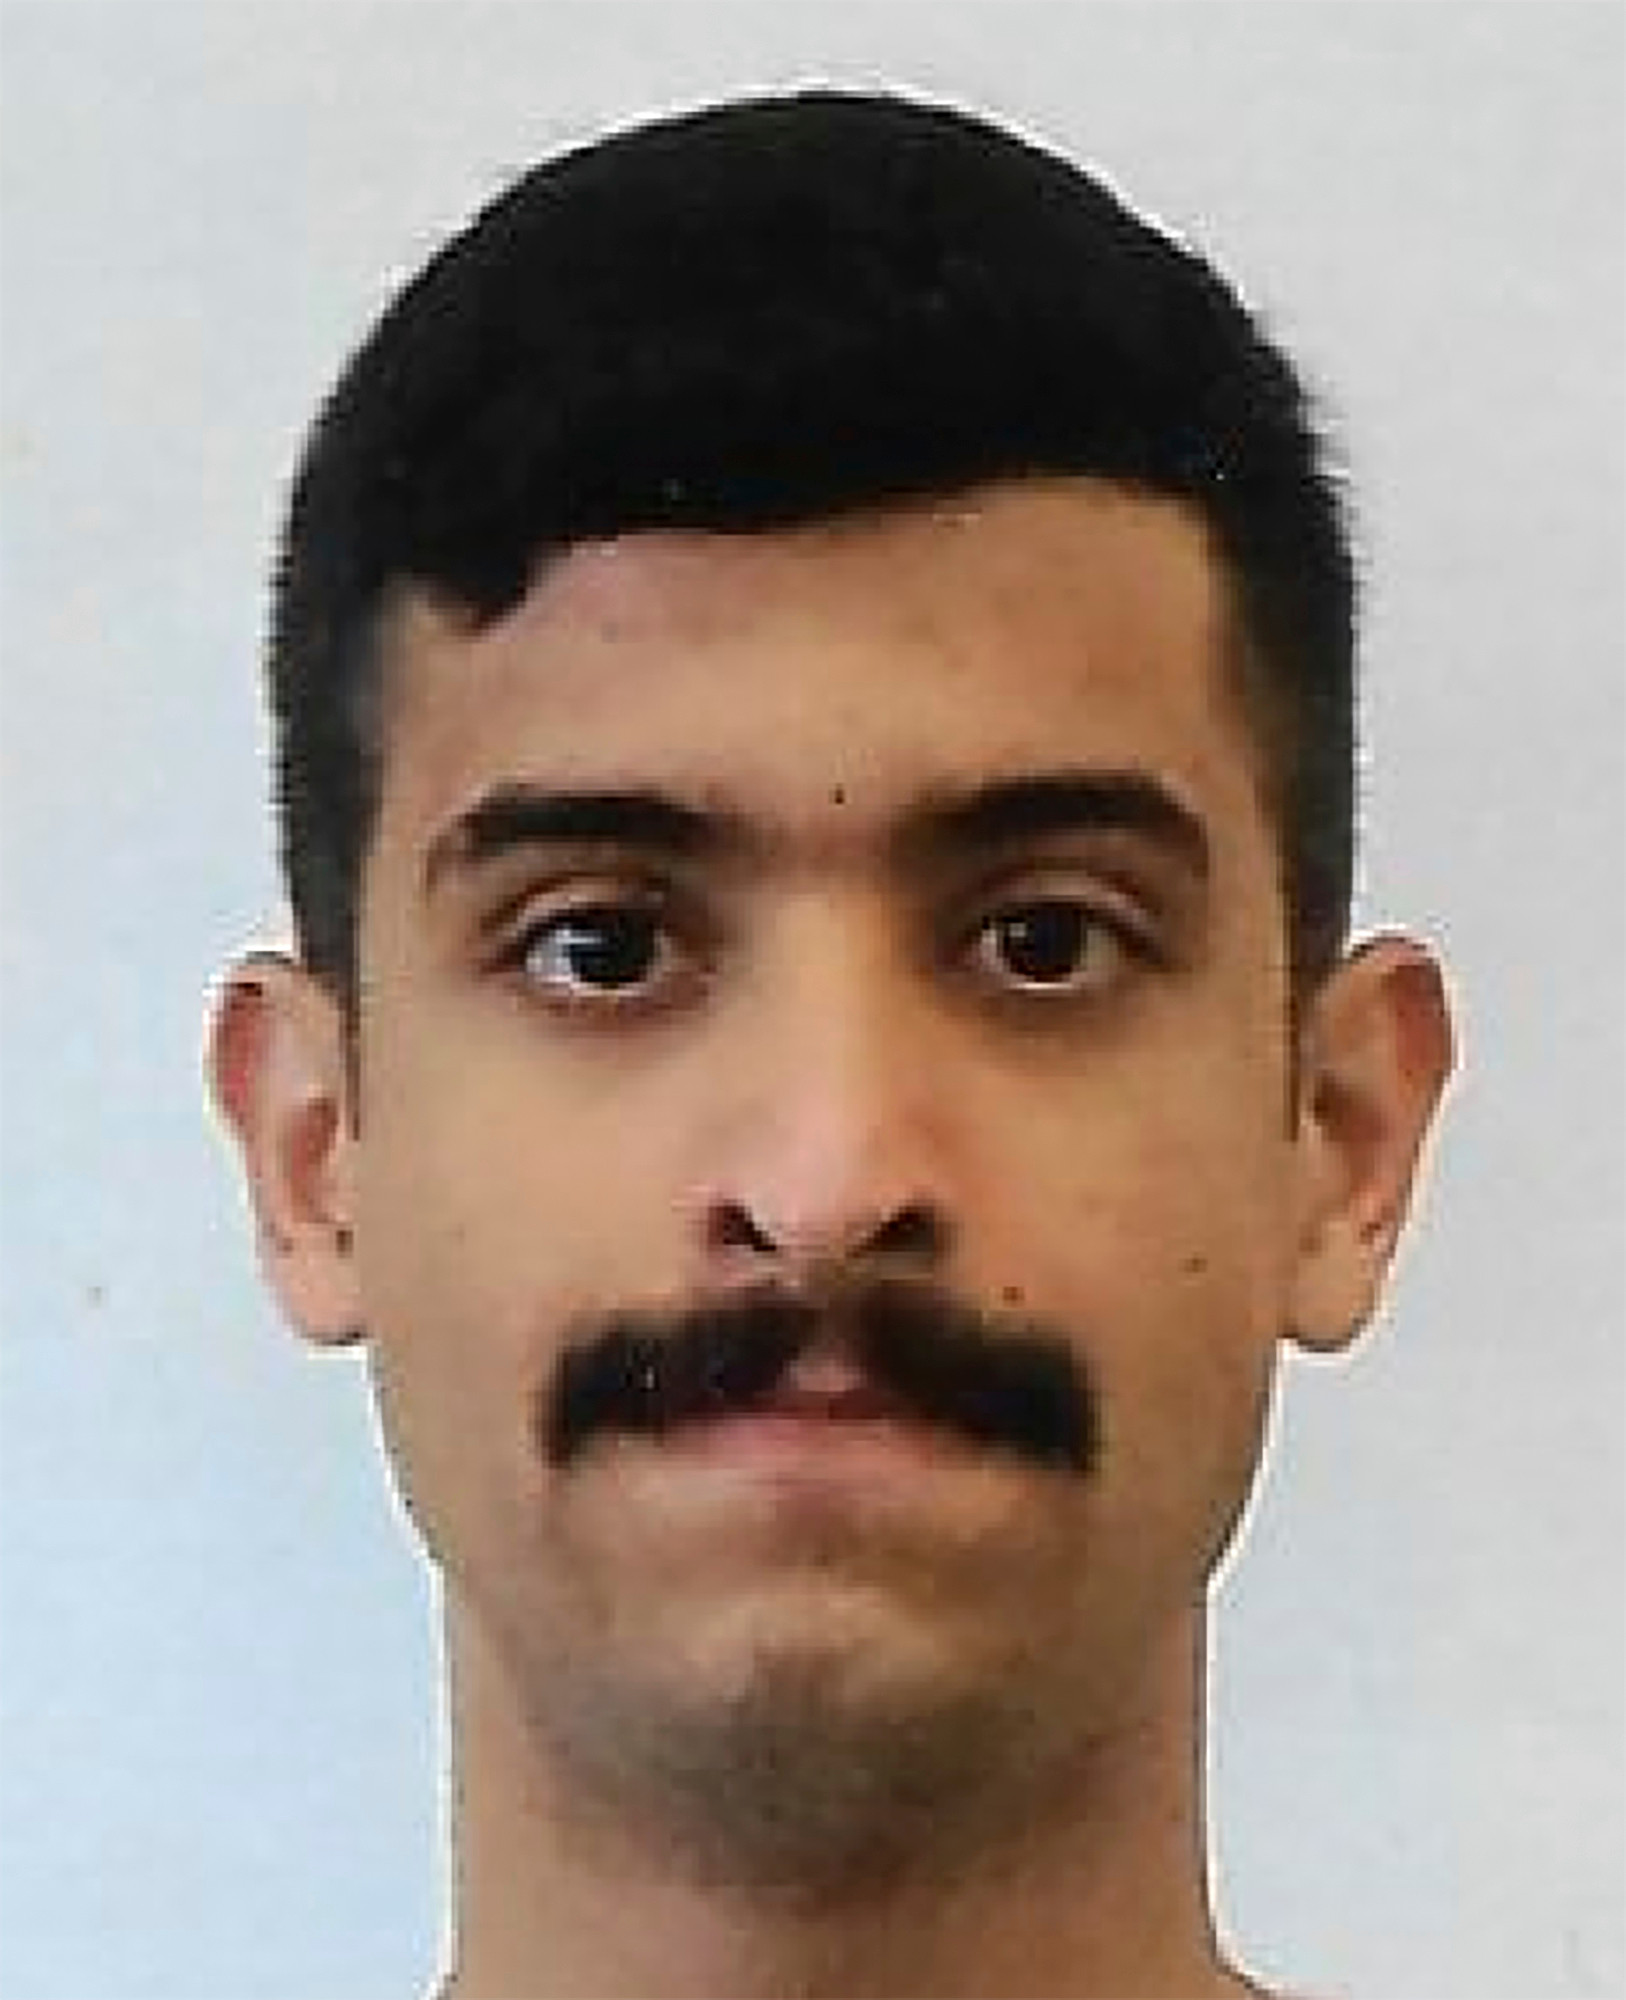   Mohammed Saeed Alshamrani được mệnh danh là tay súng đã bắn chết ba người tại một căn cứ hải quân Mỹ